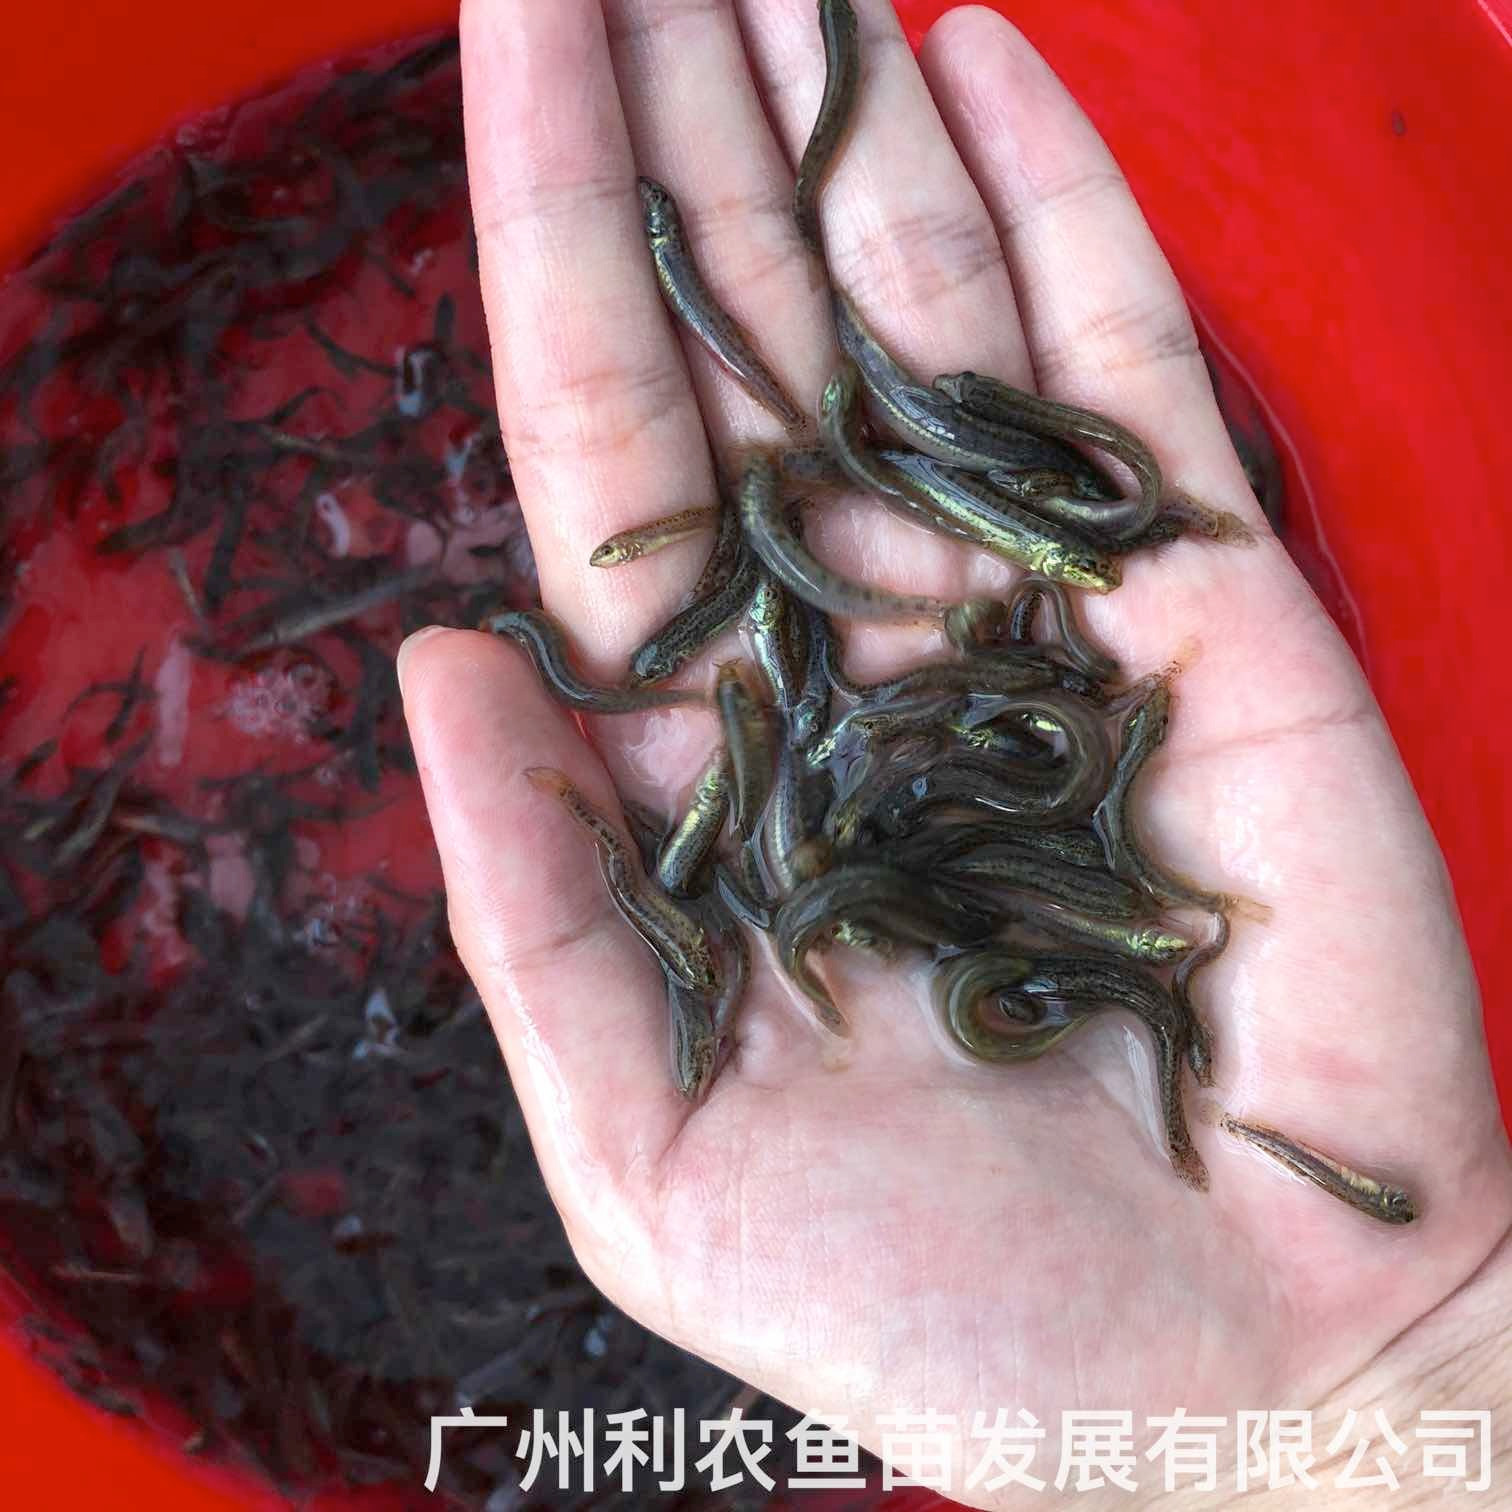 广东河源台湾泥鳅苗出售出售广东湛江泥鳅鱼苗批发养殖基地